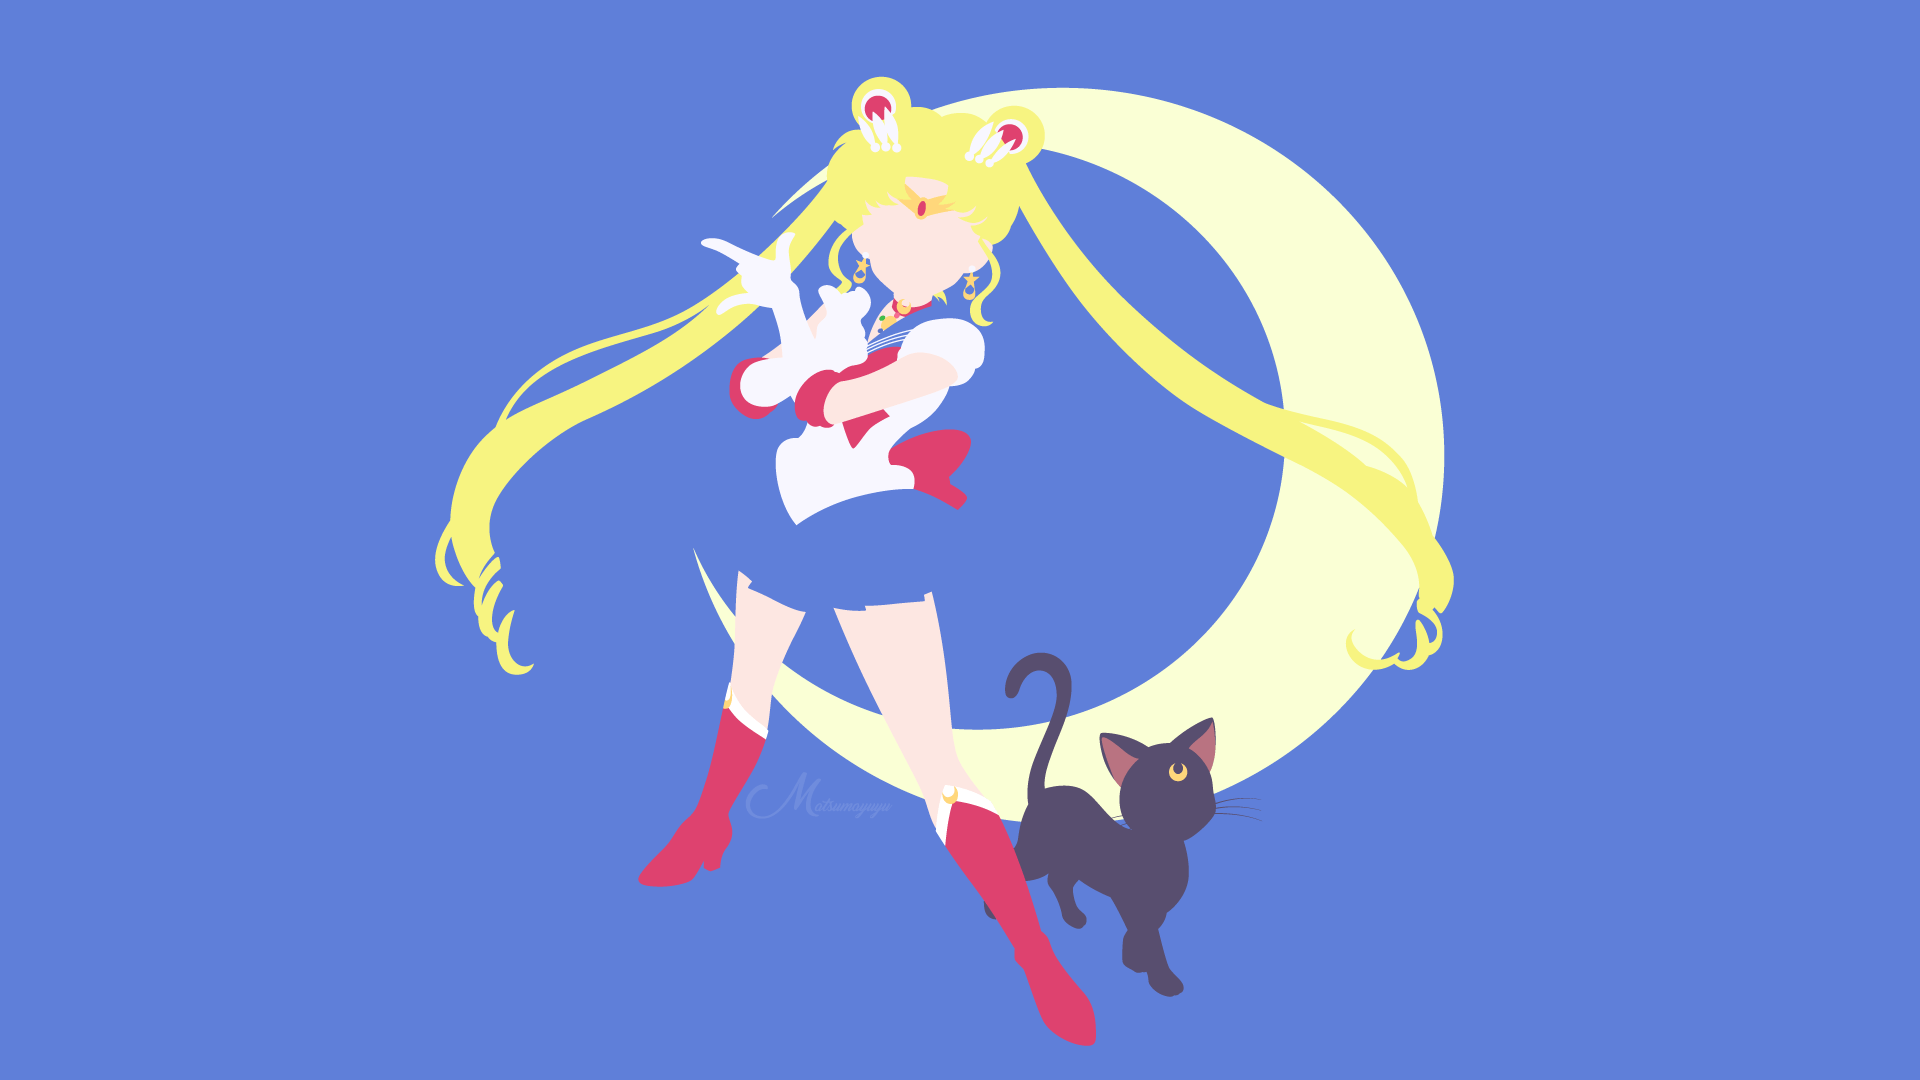 5051033 1920x1080 Sailor Moon, Luna (Sailor Moon) fondo de pantalla y